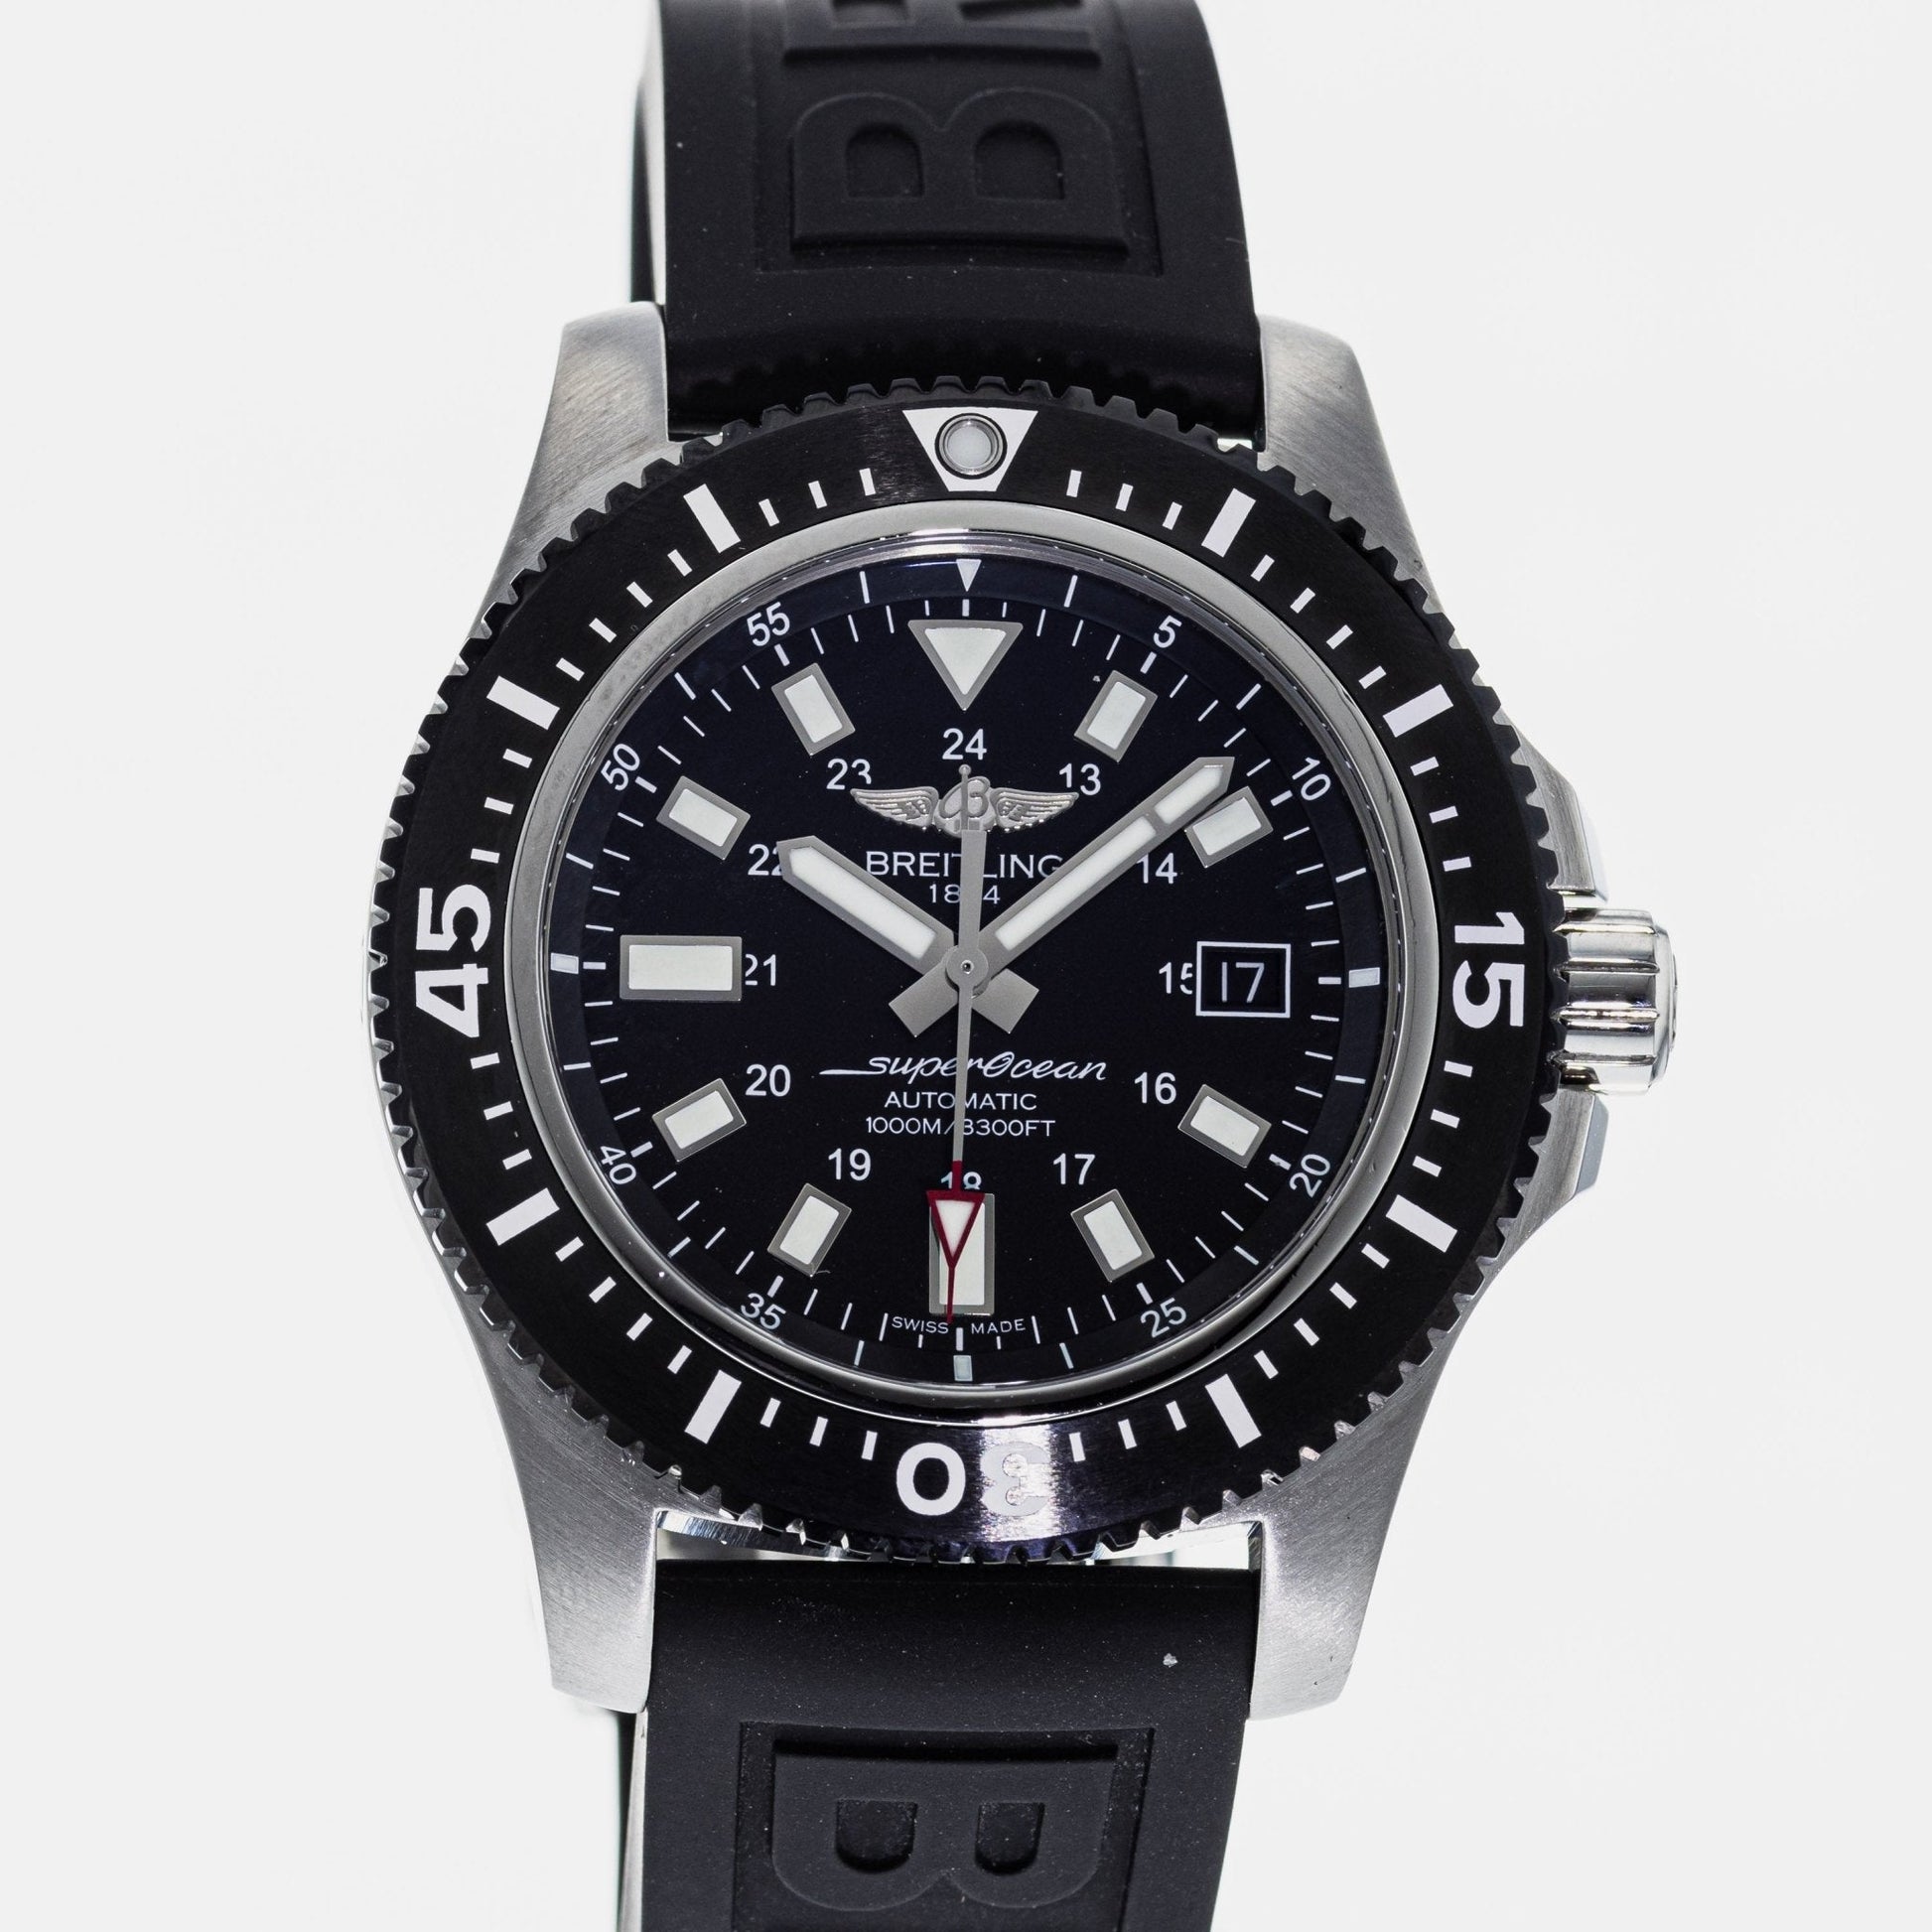 Breitling Superocean Special 44mm Ceramic Black Dial Black Rubber Strap Mens Watch - Y1739310/BF45